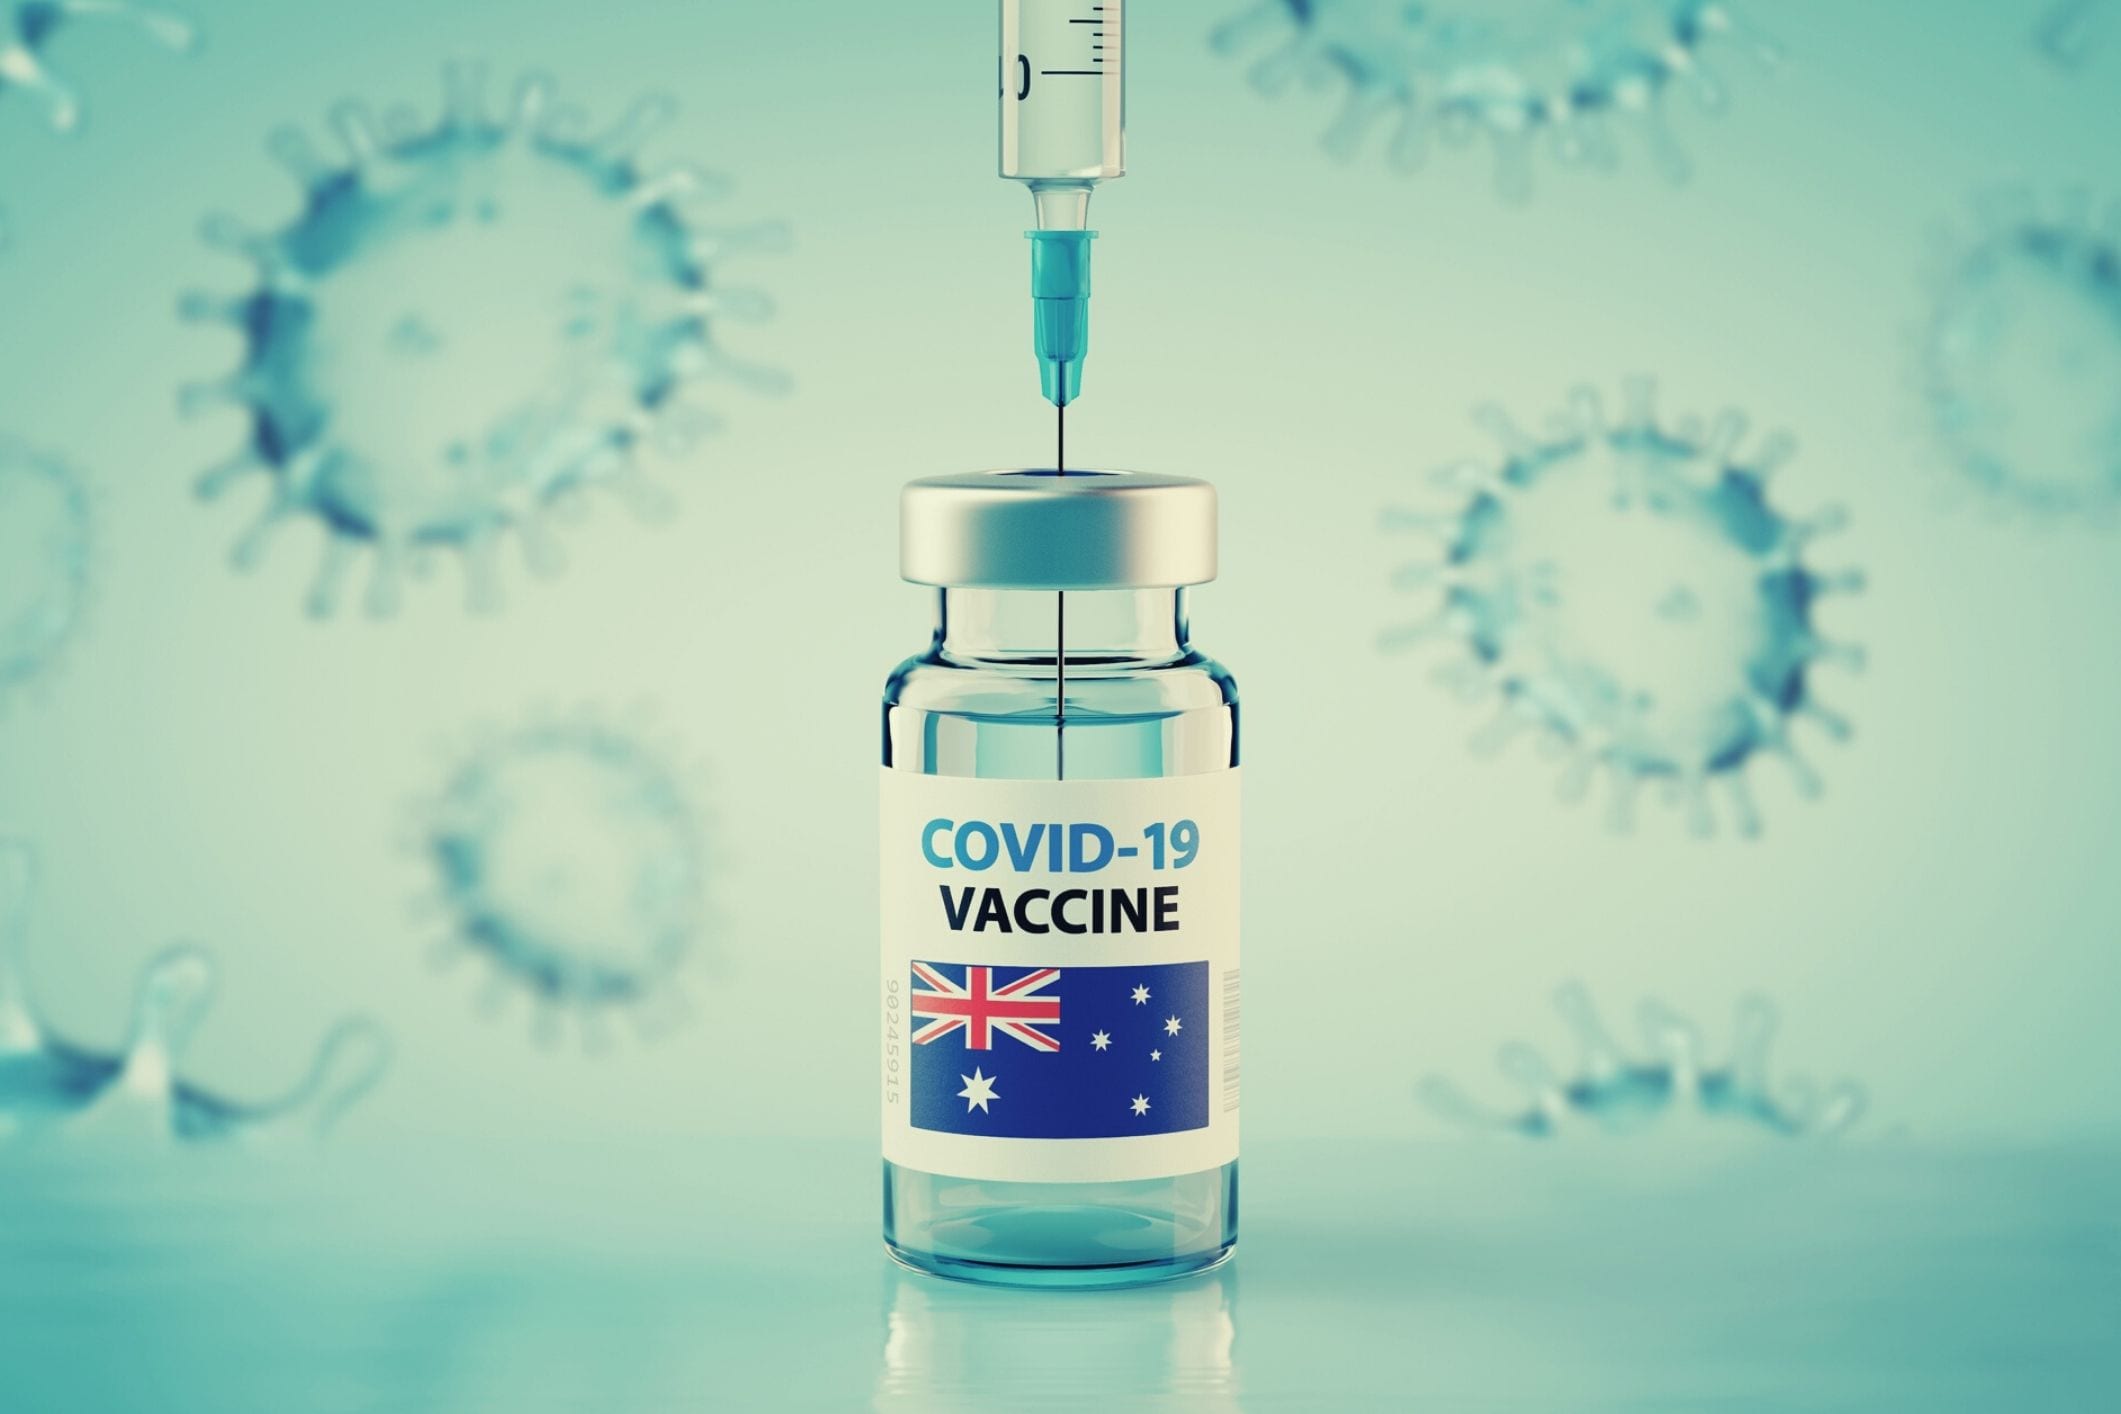 Over 50 COVID vaccine